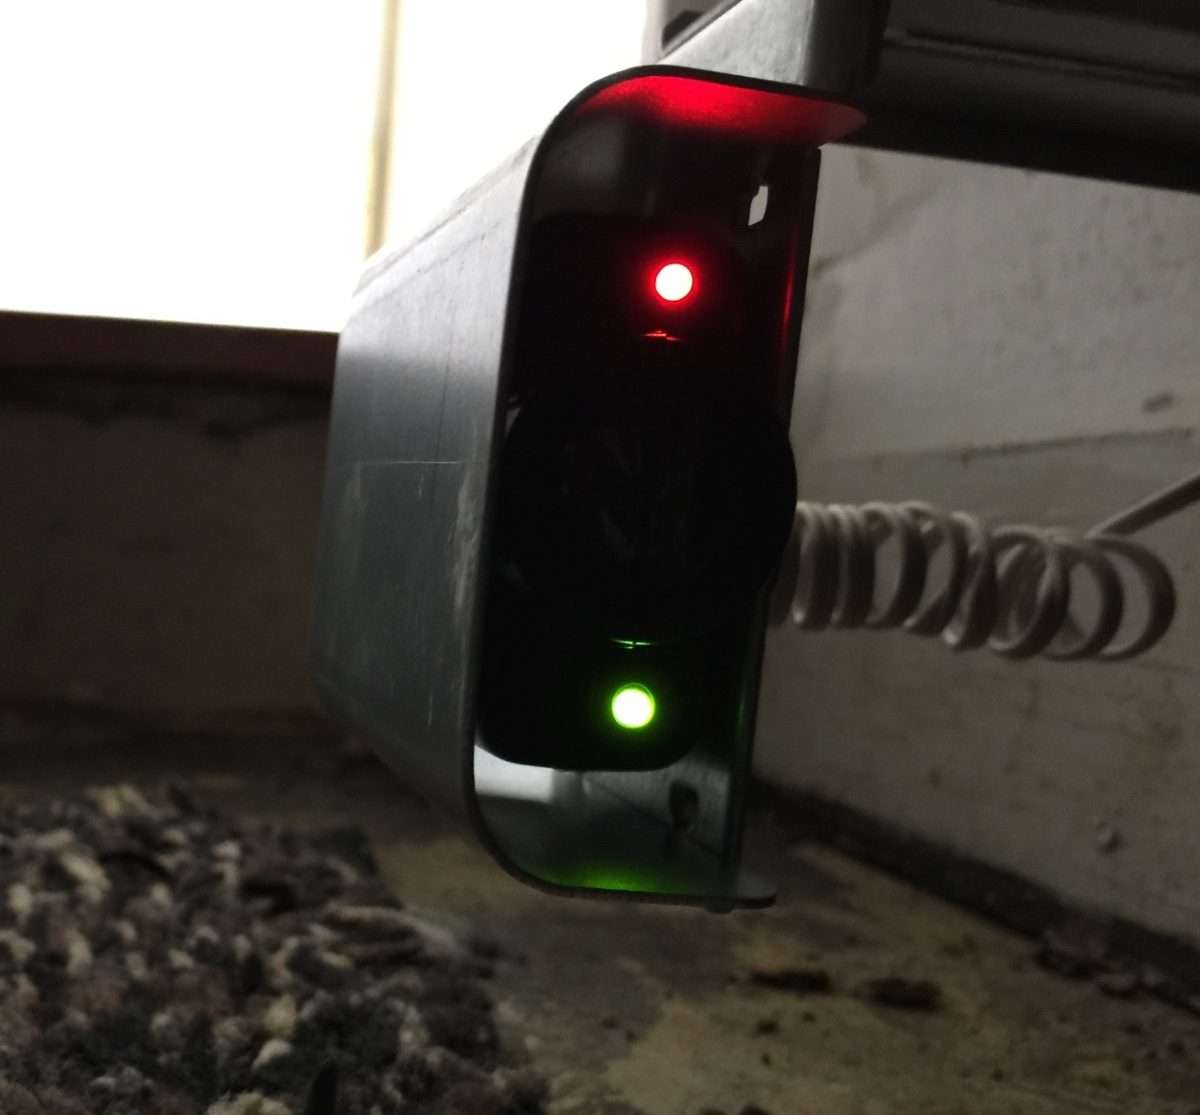 Receiving sensor on Linear garage door opener.